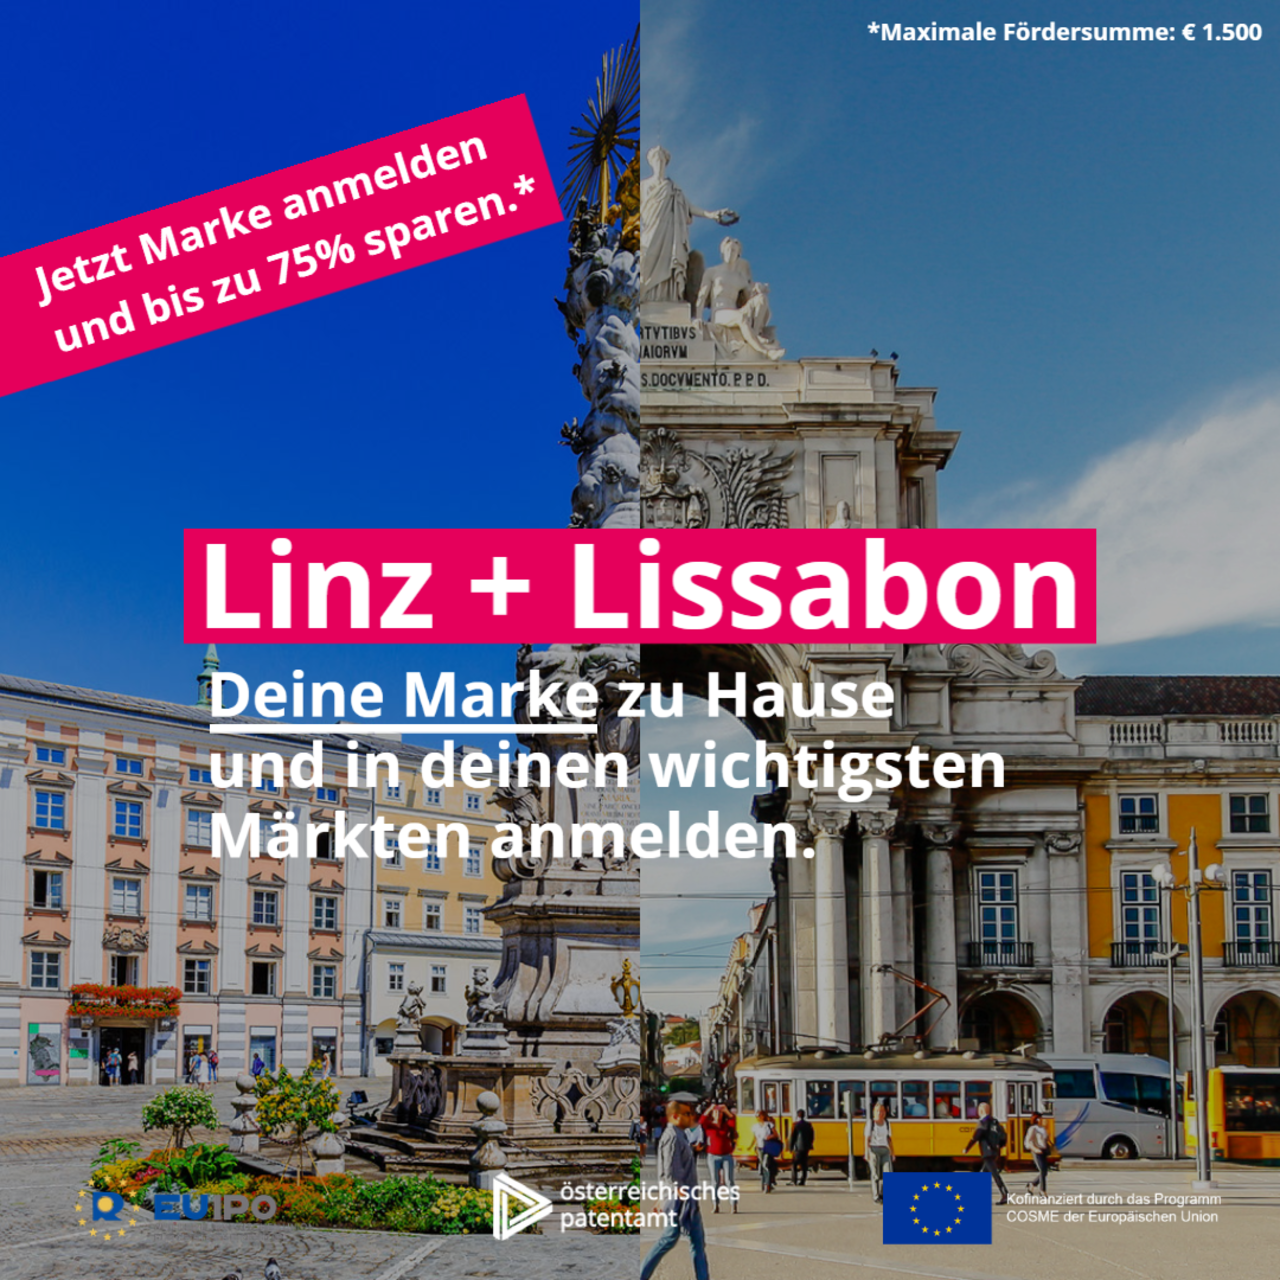 Linz + Lisssabon. Deine Marke zu Hause und in deinen wichtigsten Märkten anmelden. Jetzt Marke anmelden und bis zu 75% sparen. Maximale Fördersumme: € 1.500.